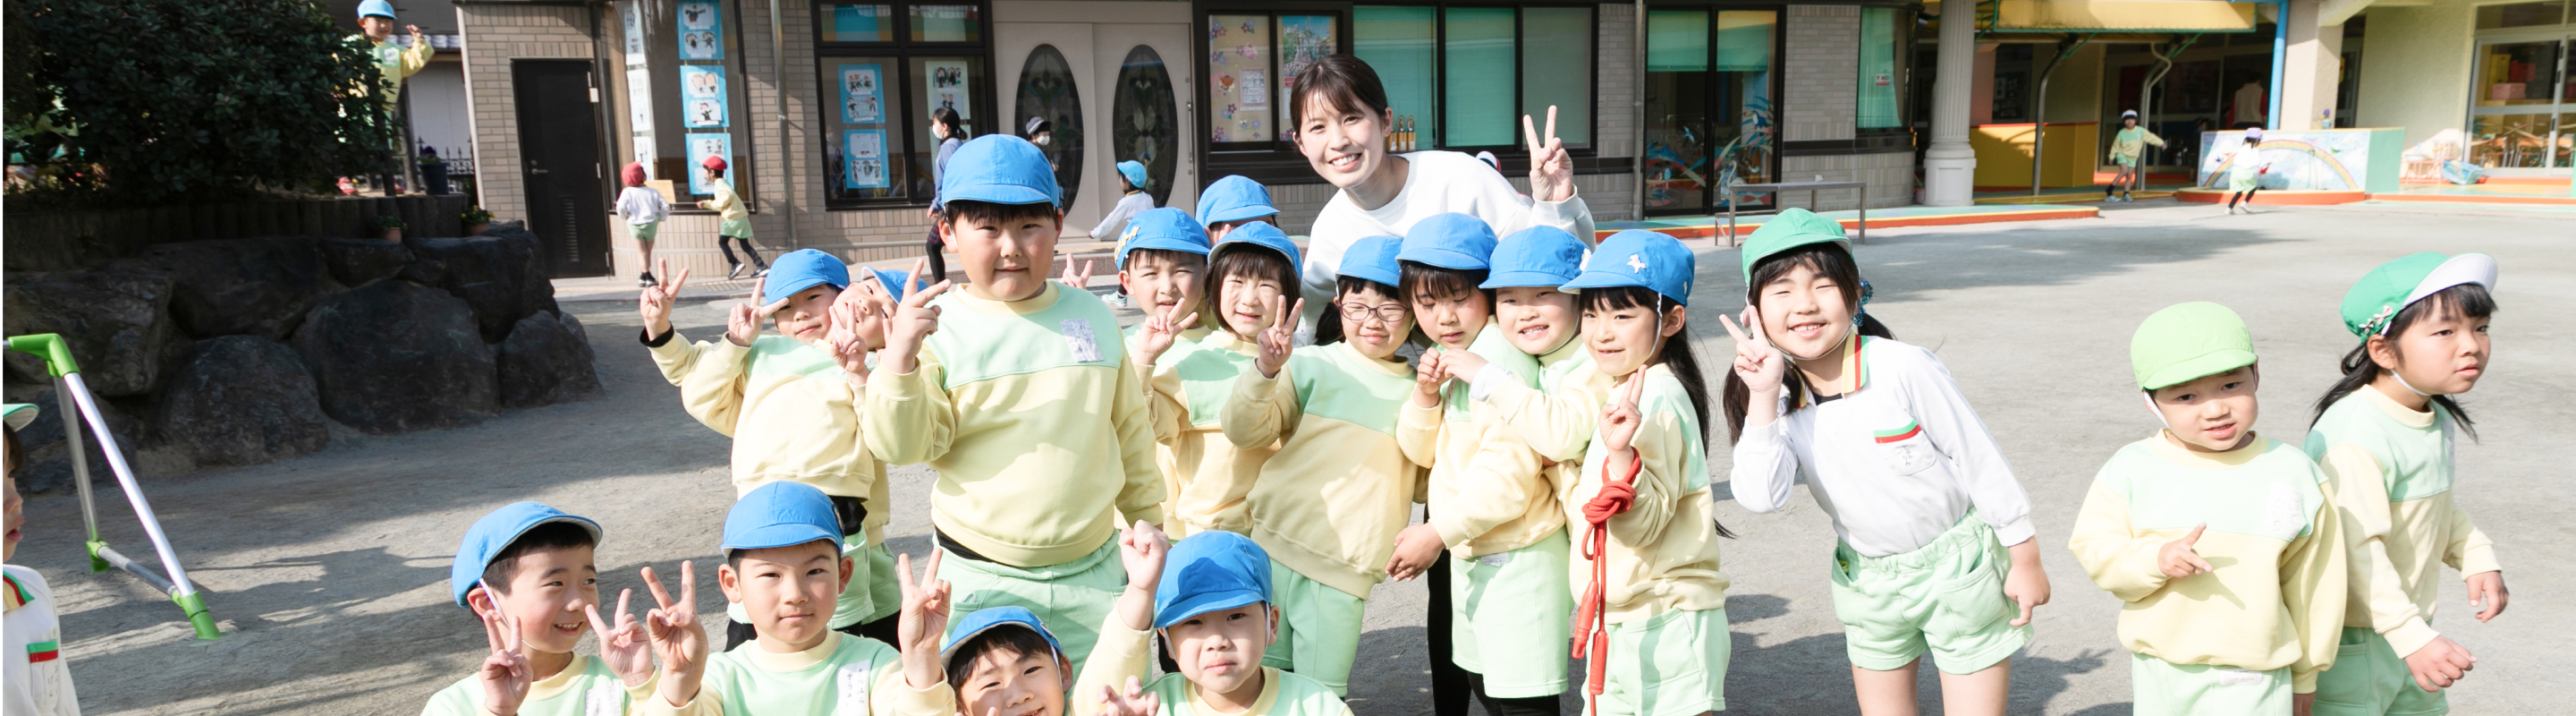 先生と子どもたちの笑顔あふれる石橋幼稚園